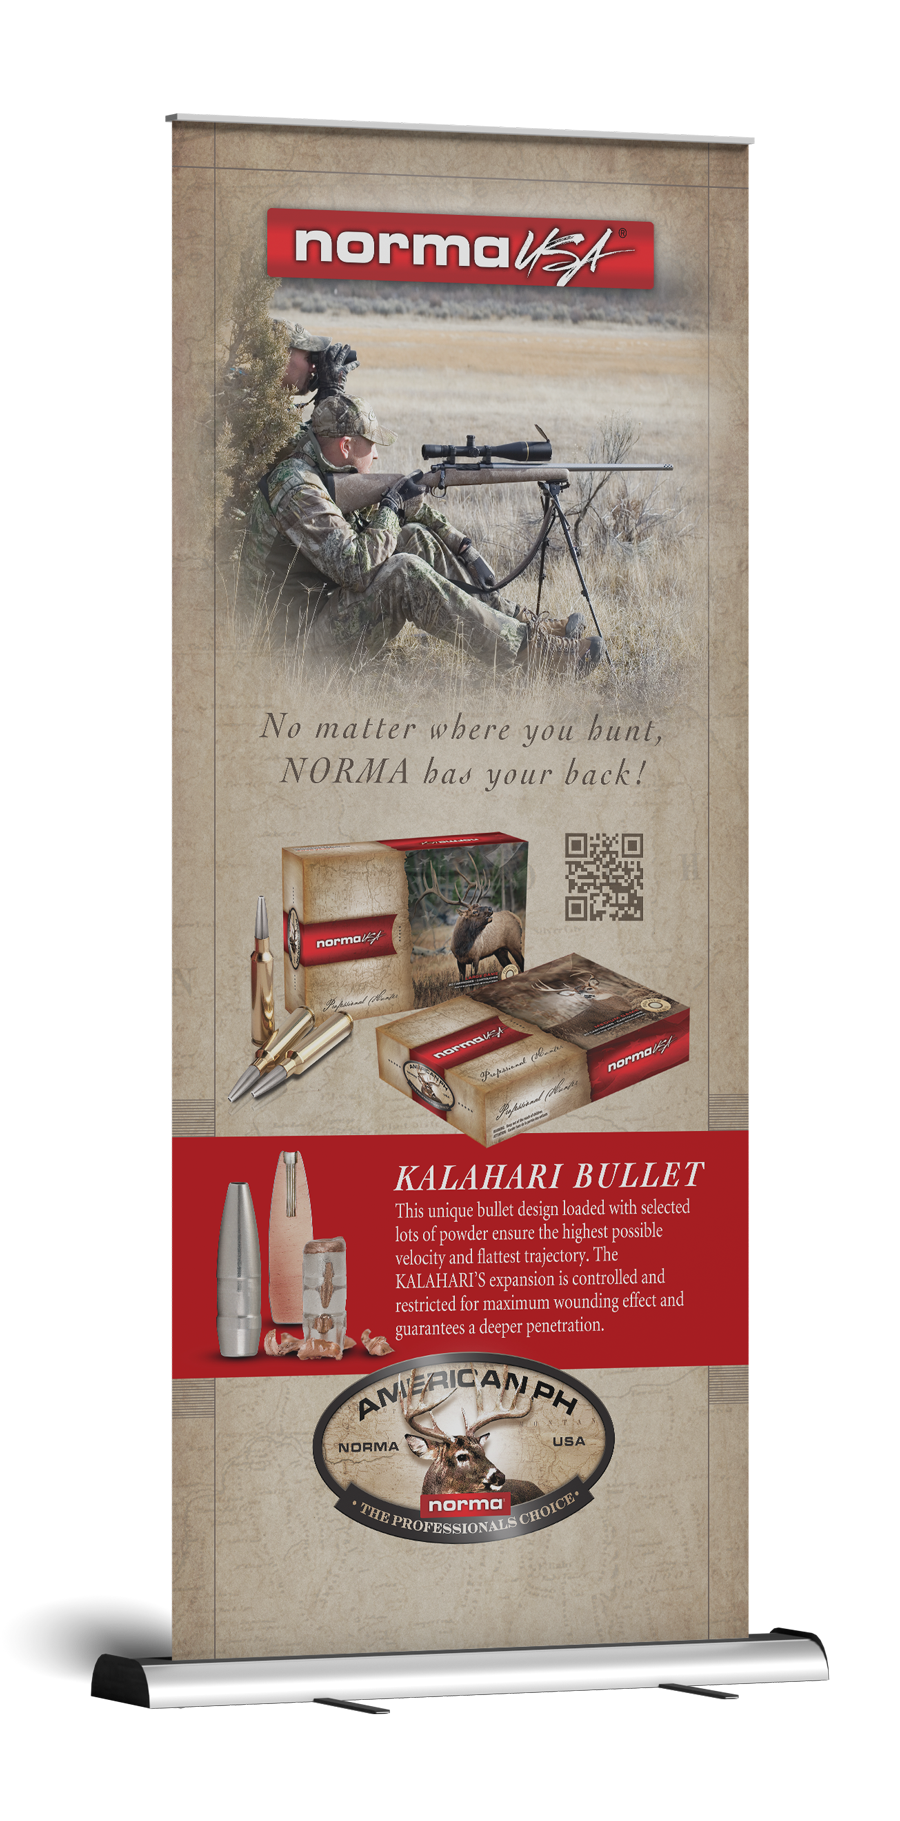 Norma USA Ammunition Kalahari Bullet - Pop Up Banner Design & Print Production